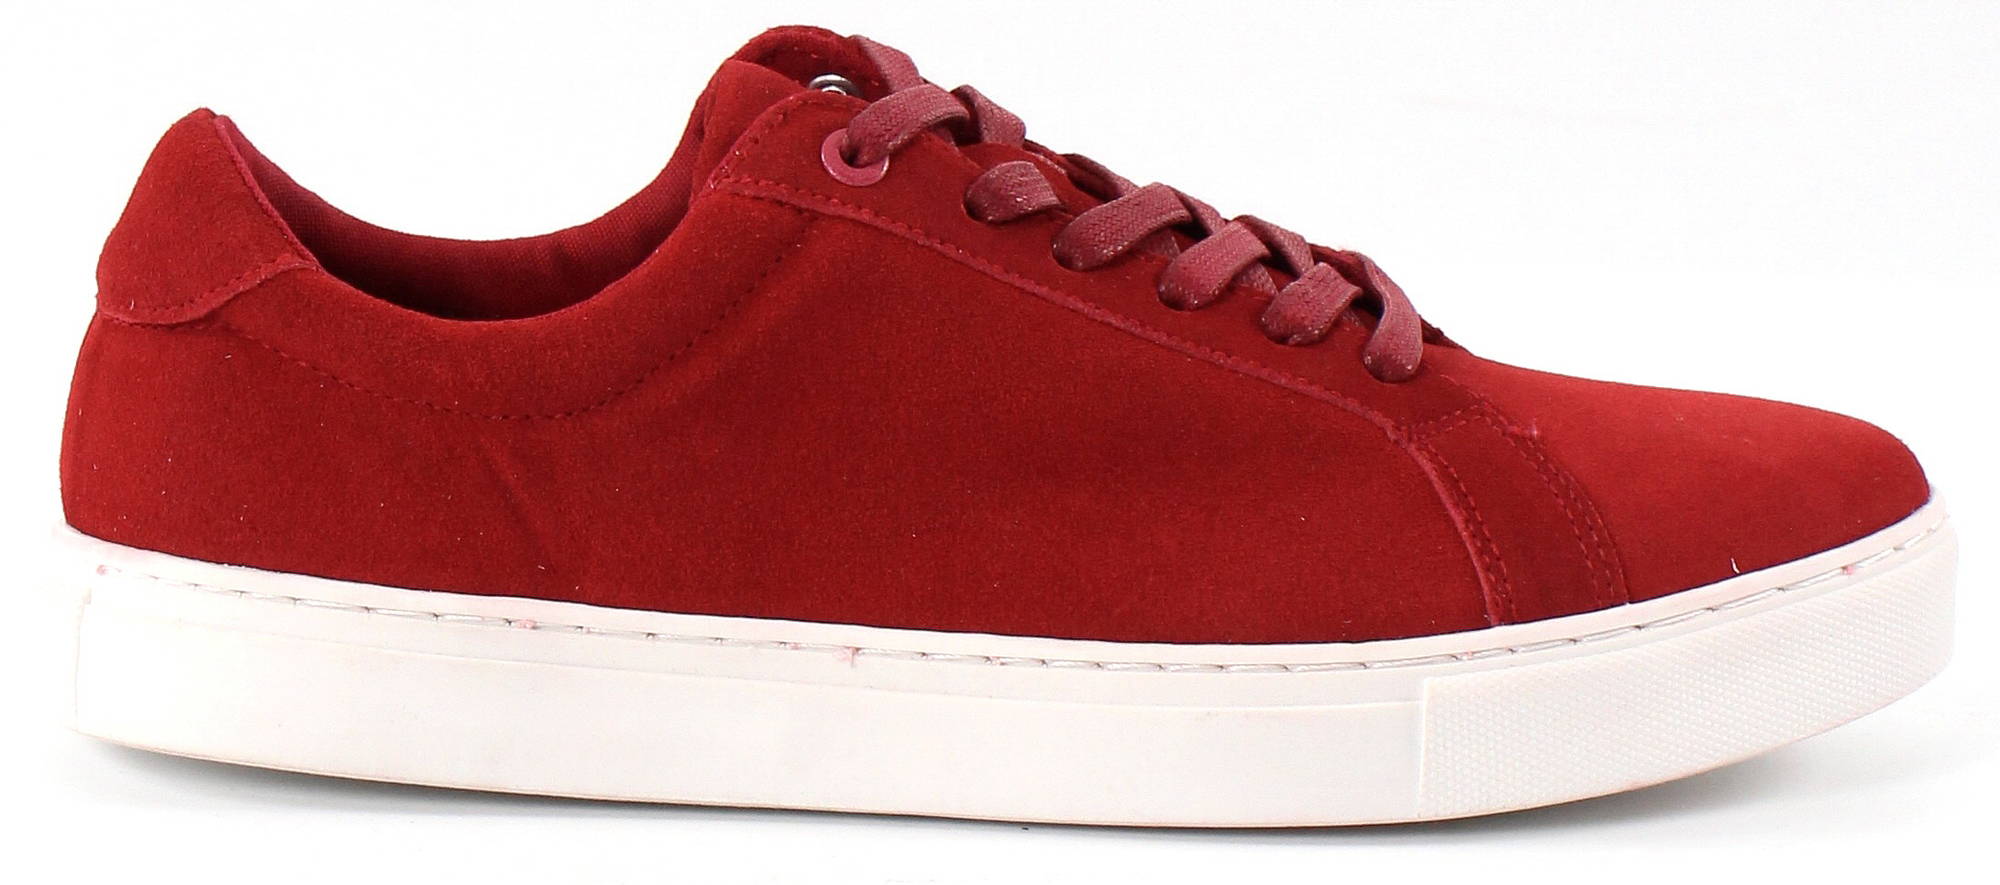 Network Sneakers 73-42304, Red - Stilettoshop.eu webstore